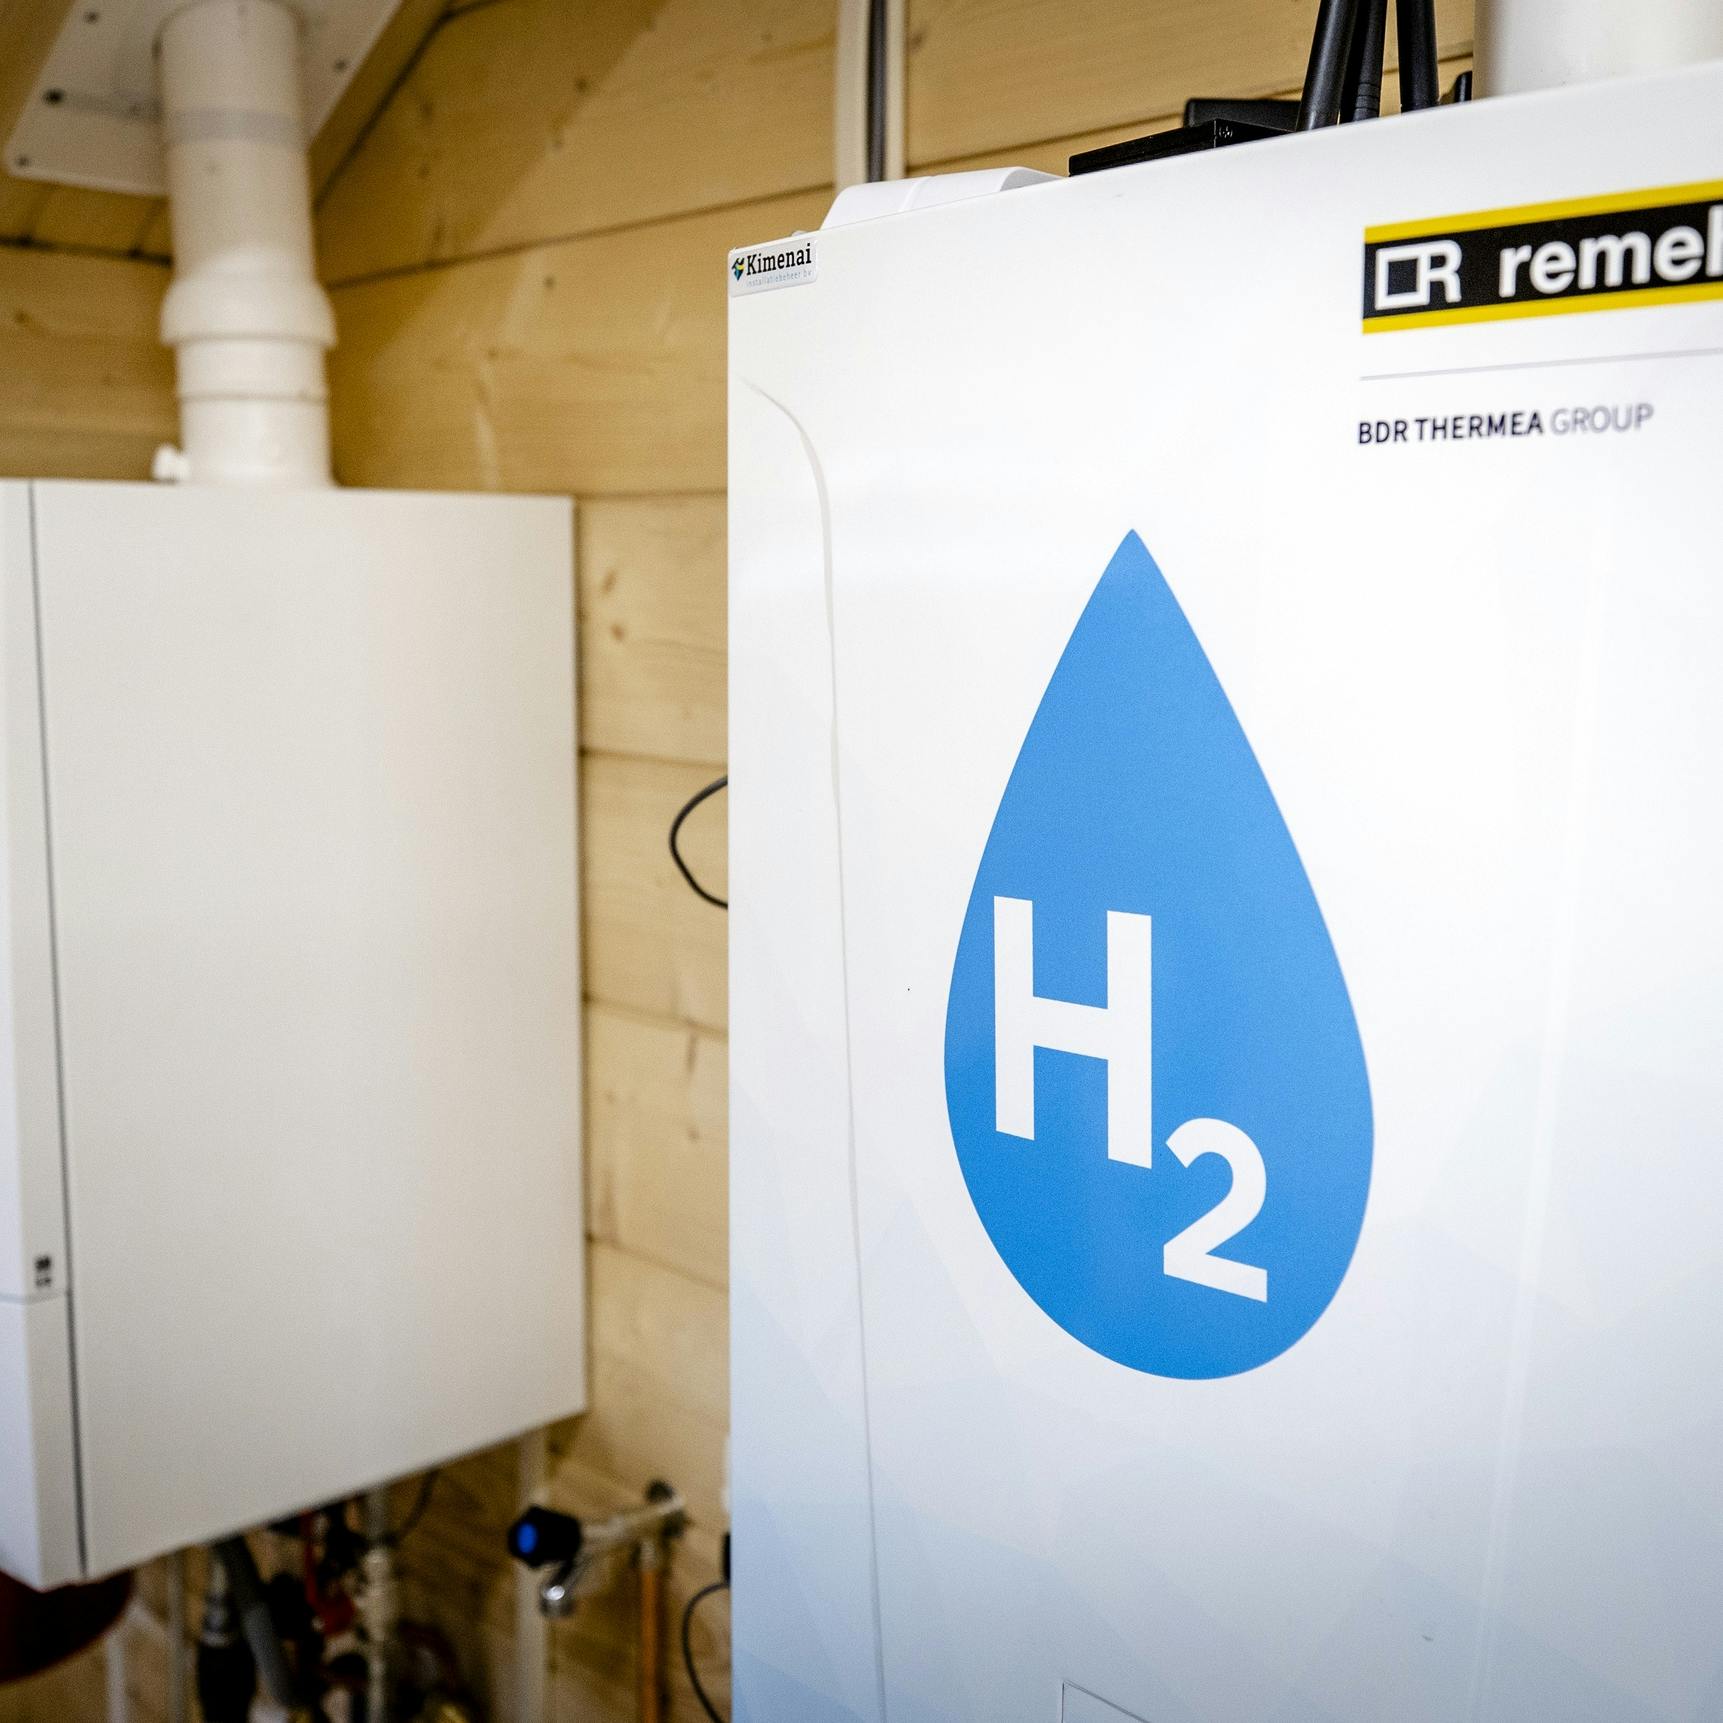 Verwarmen wij ons huis in de toekomst met waterstof?